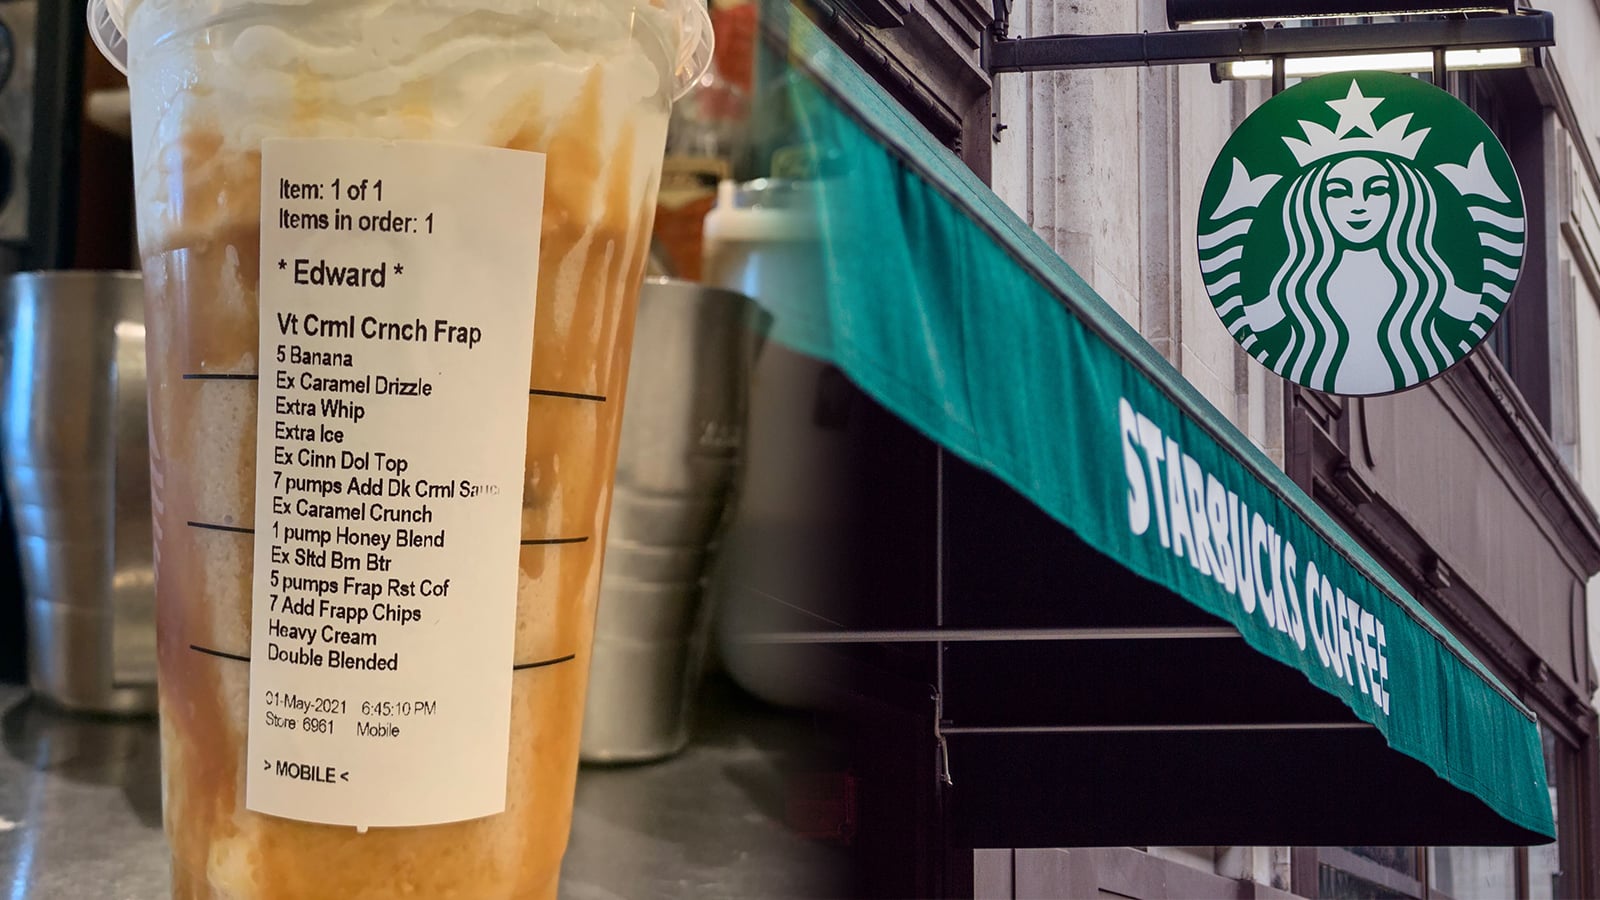 https://editors.dexerto.com/wp-content/uploads/2021/05/04/Starbucks-baristas-share-crazy-drink-orders.jpg